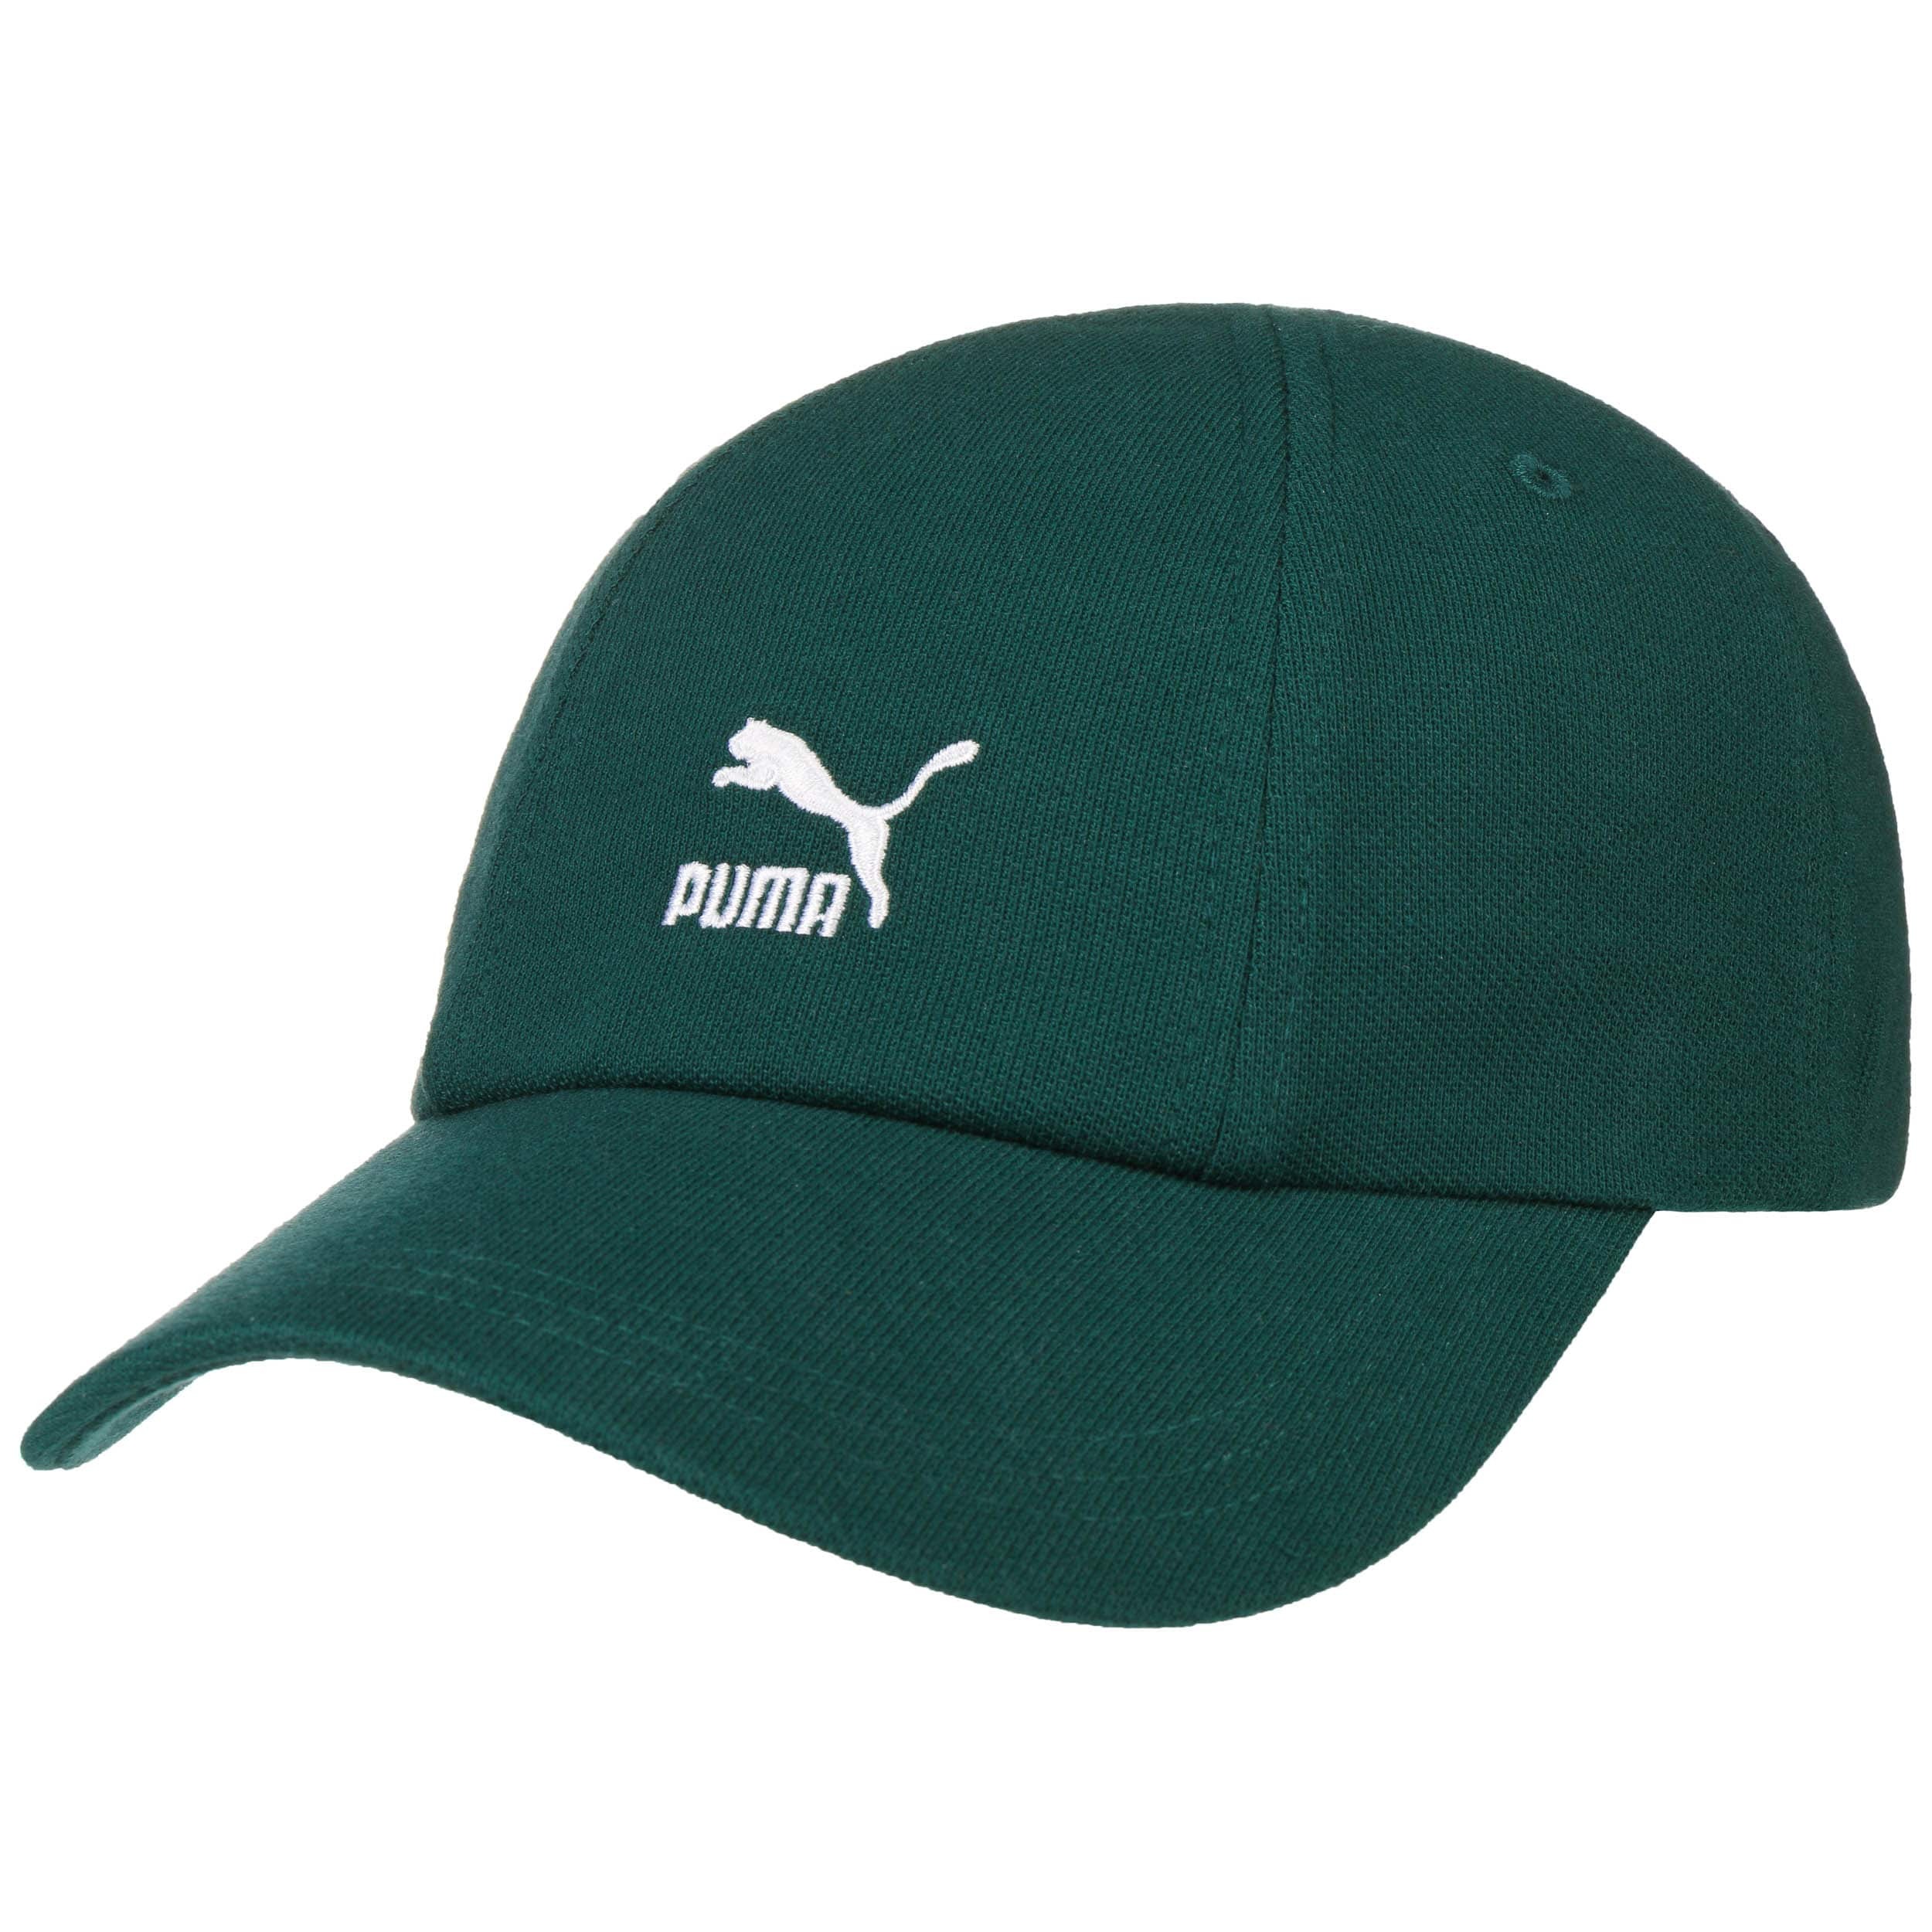 puma green cap